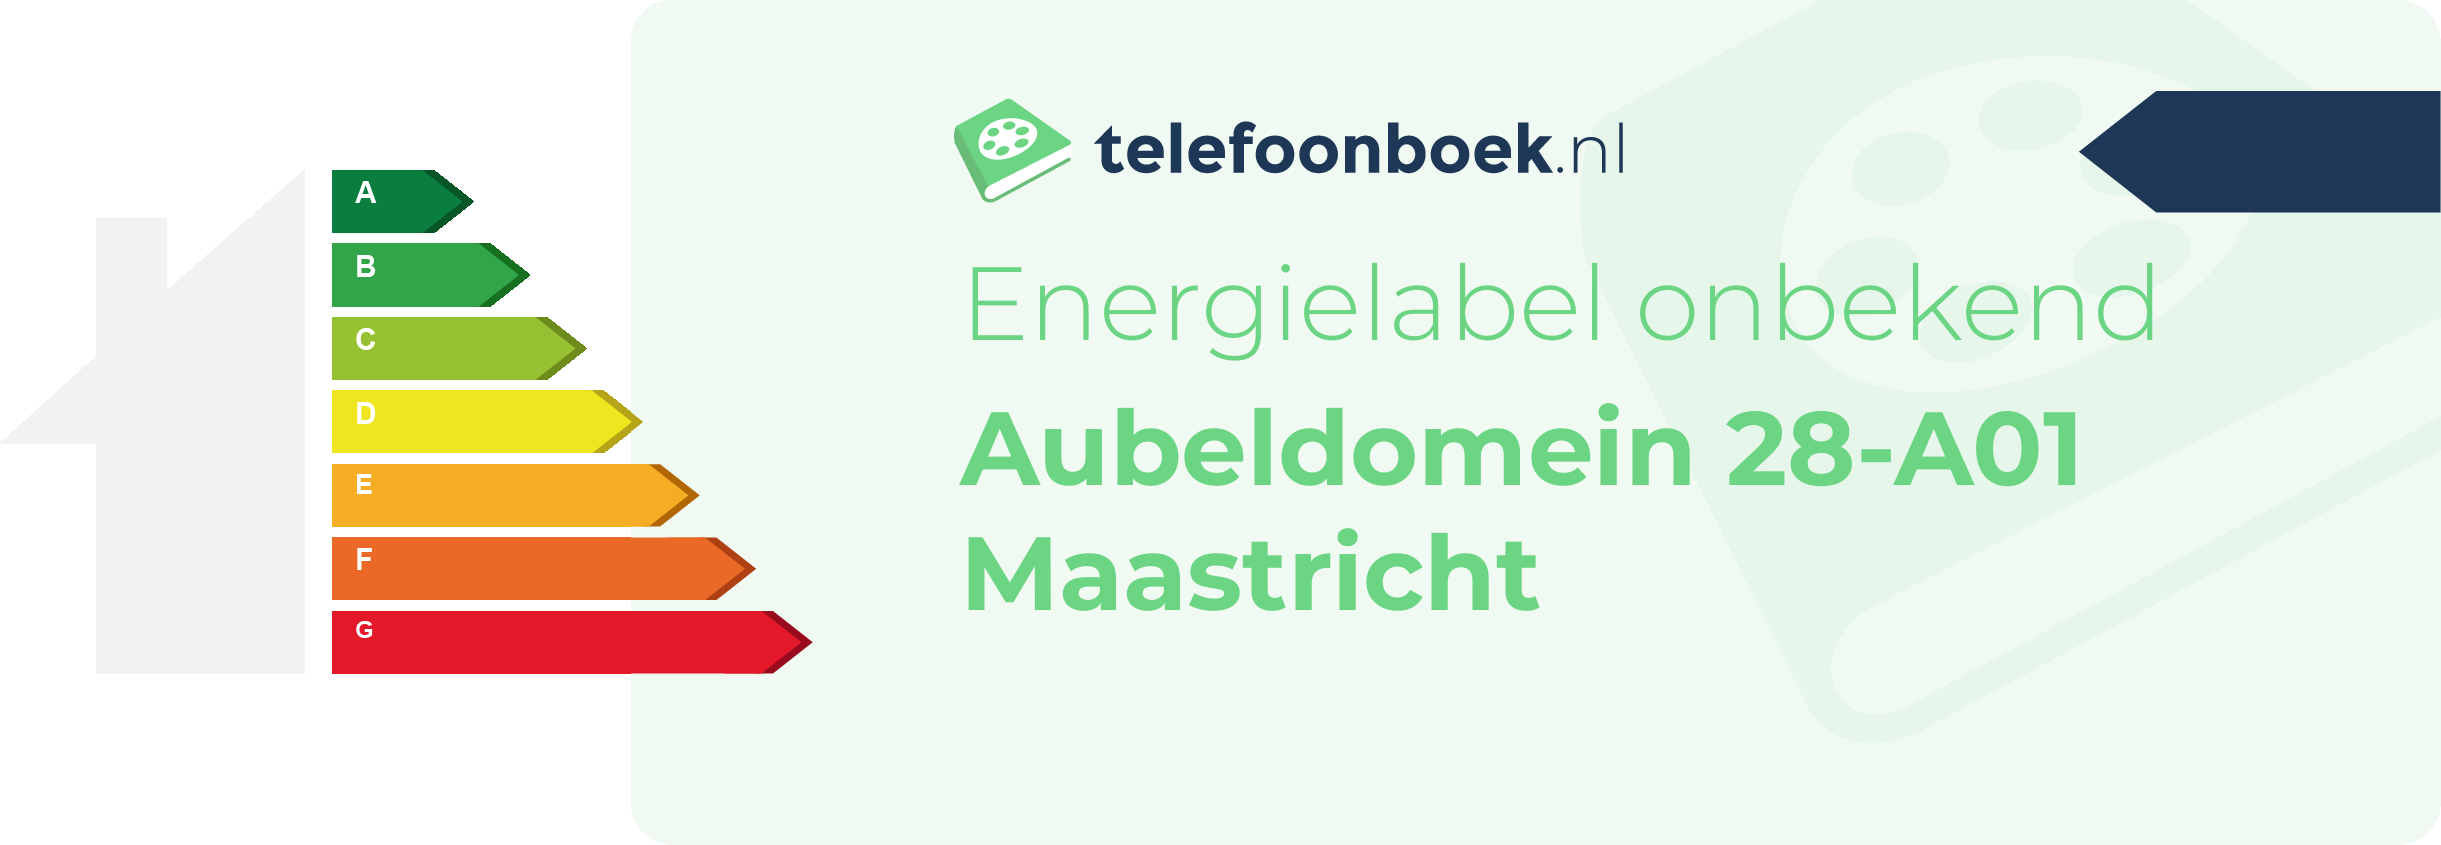 Energielabel Aubeldomein 28-A01 Maastricht